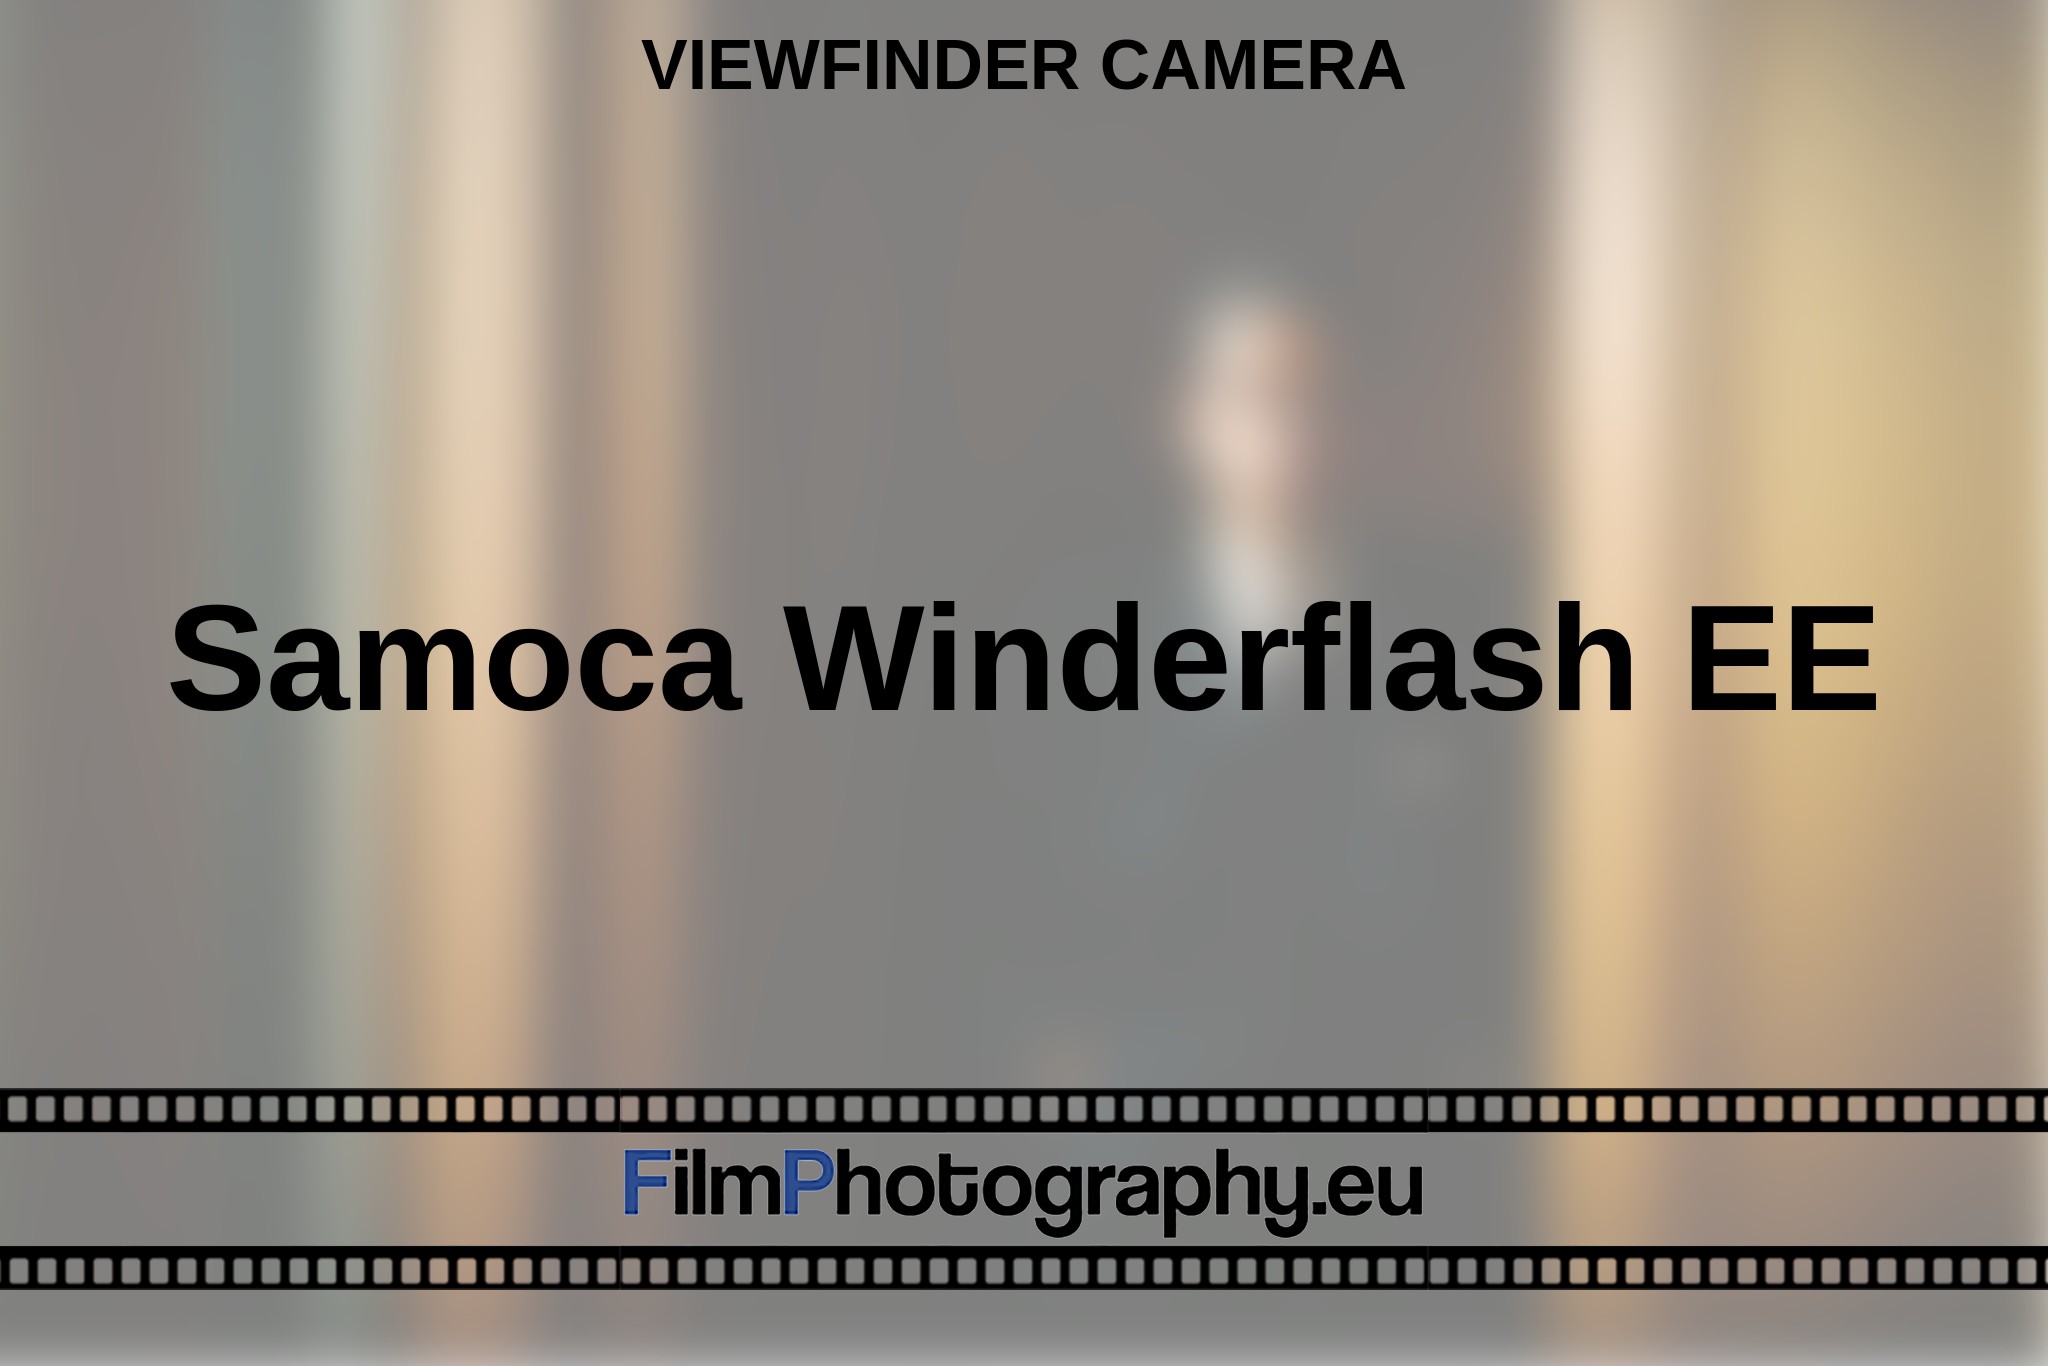 samoca-winderflash-ee-viewfinder-camera-en-bnv.jpg